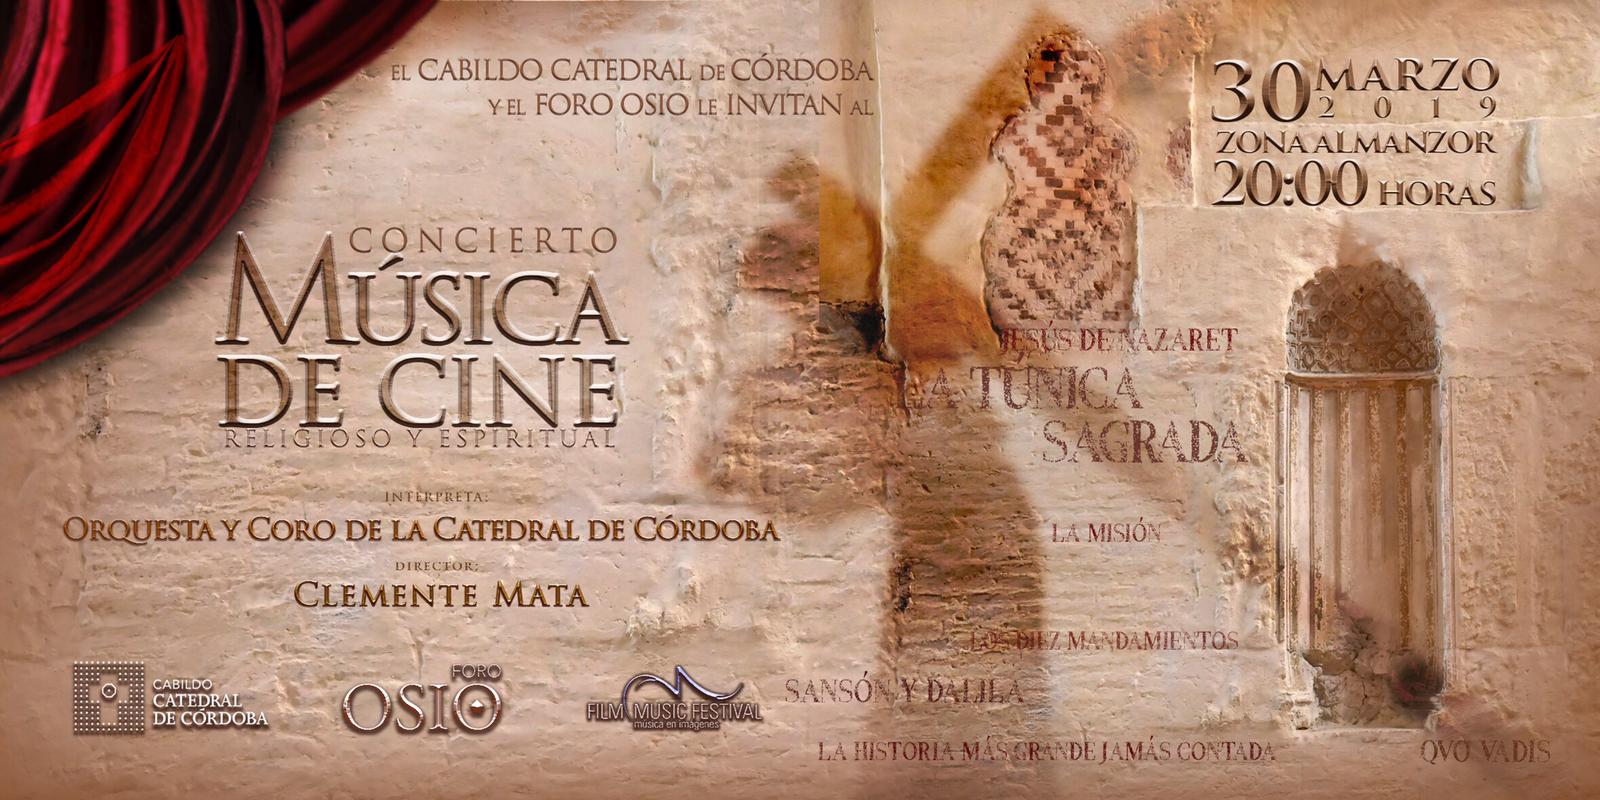 CONCIERTO MUSICA DE CINE RELIGIOSO Y ESPIRITUAL